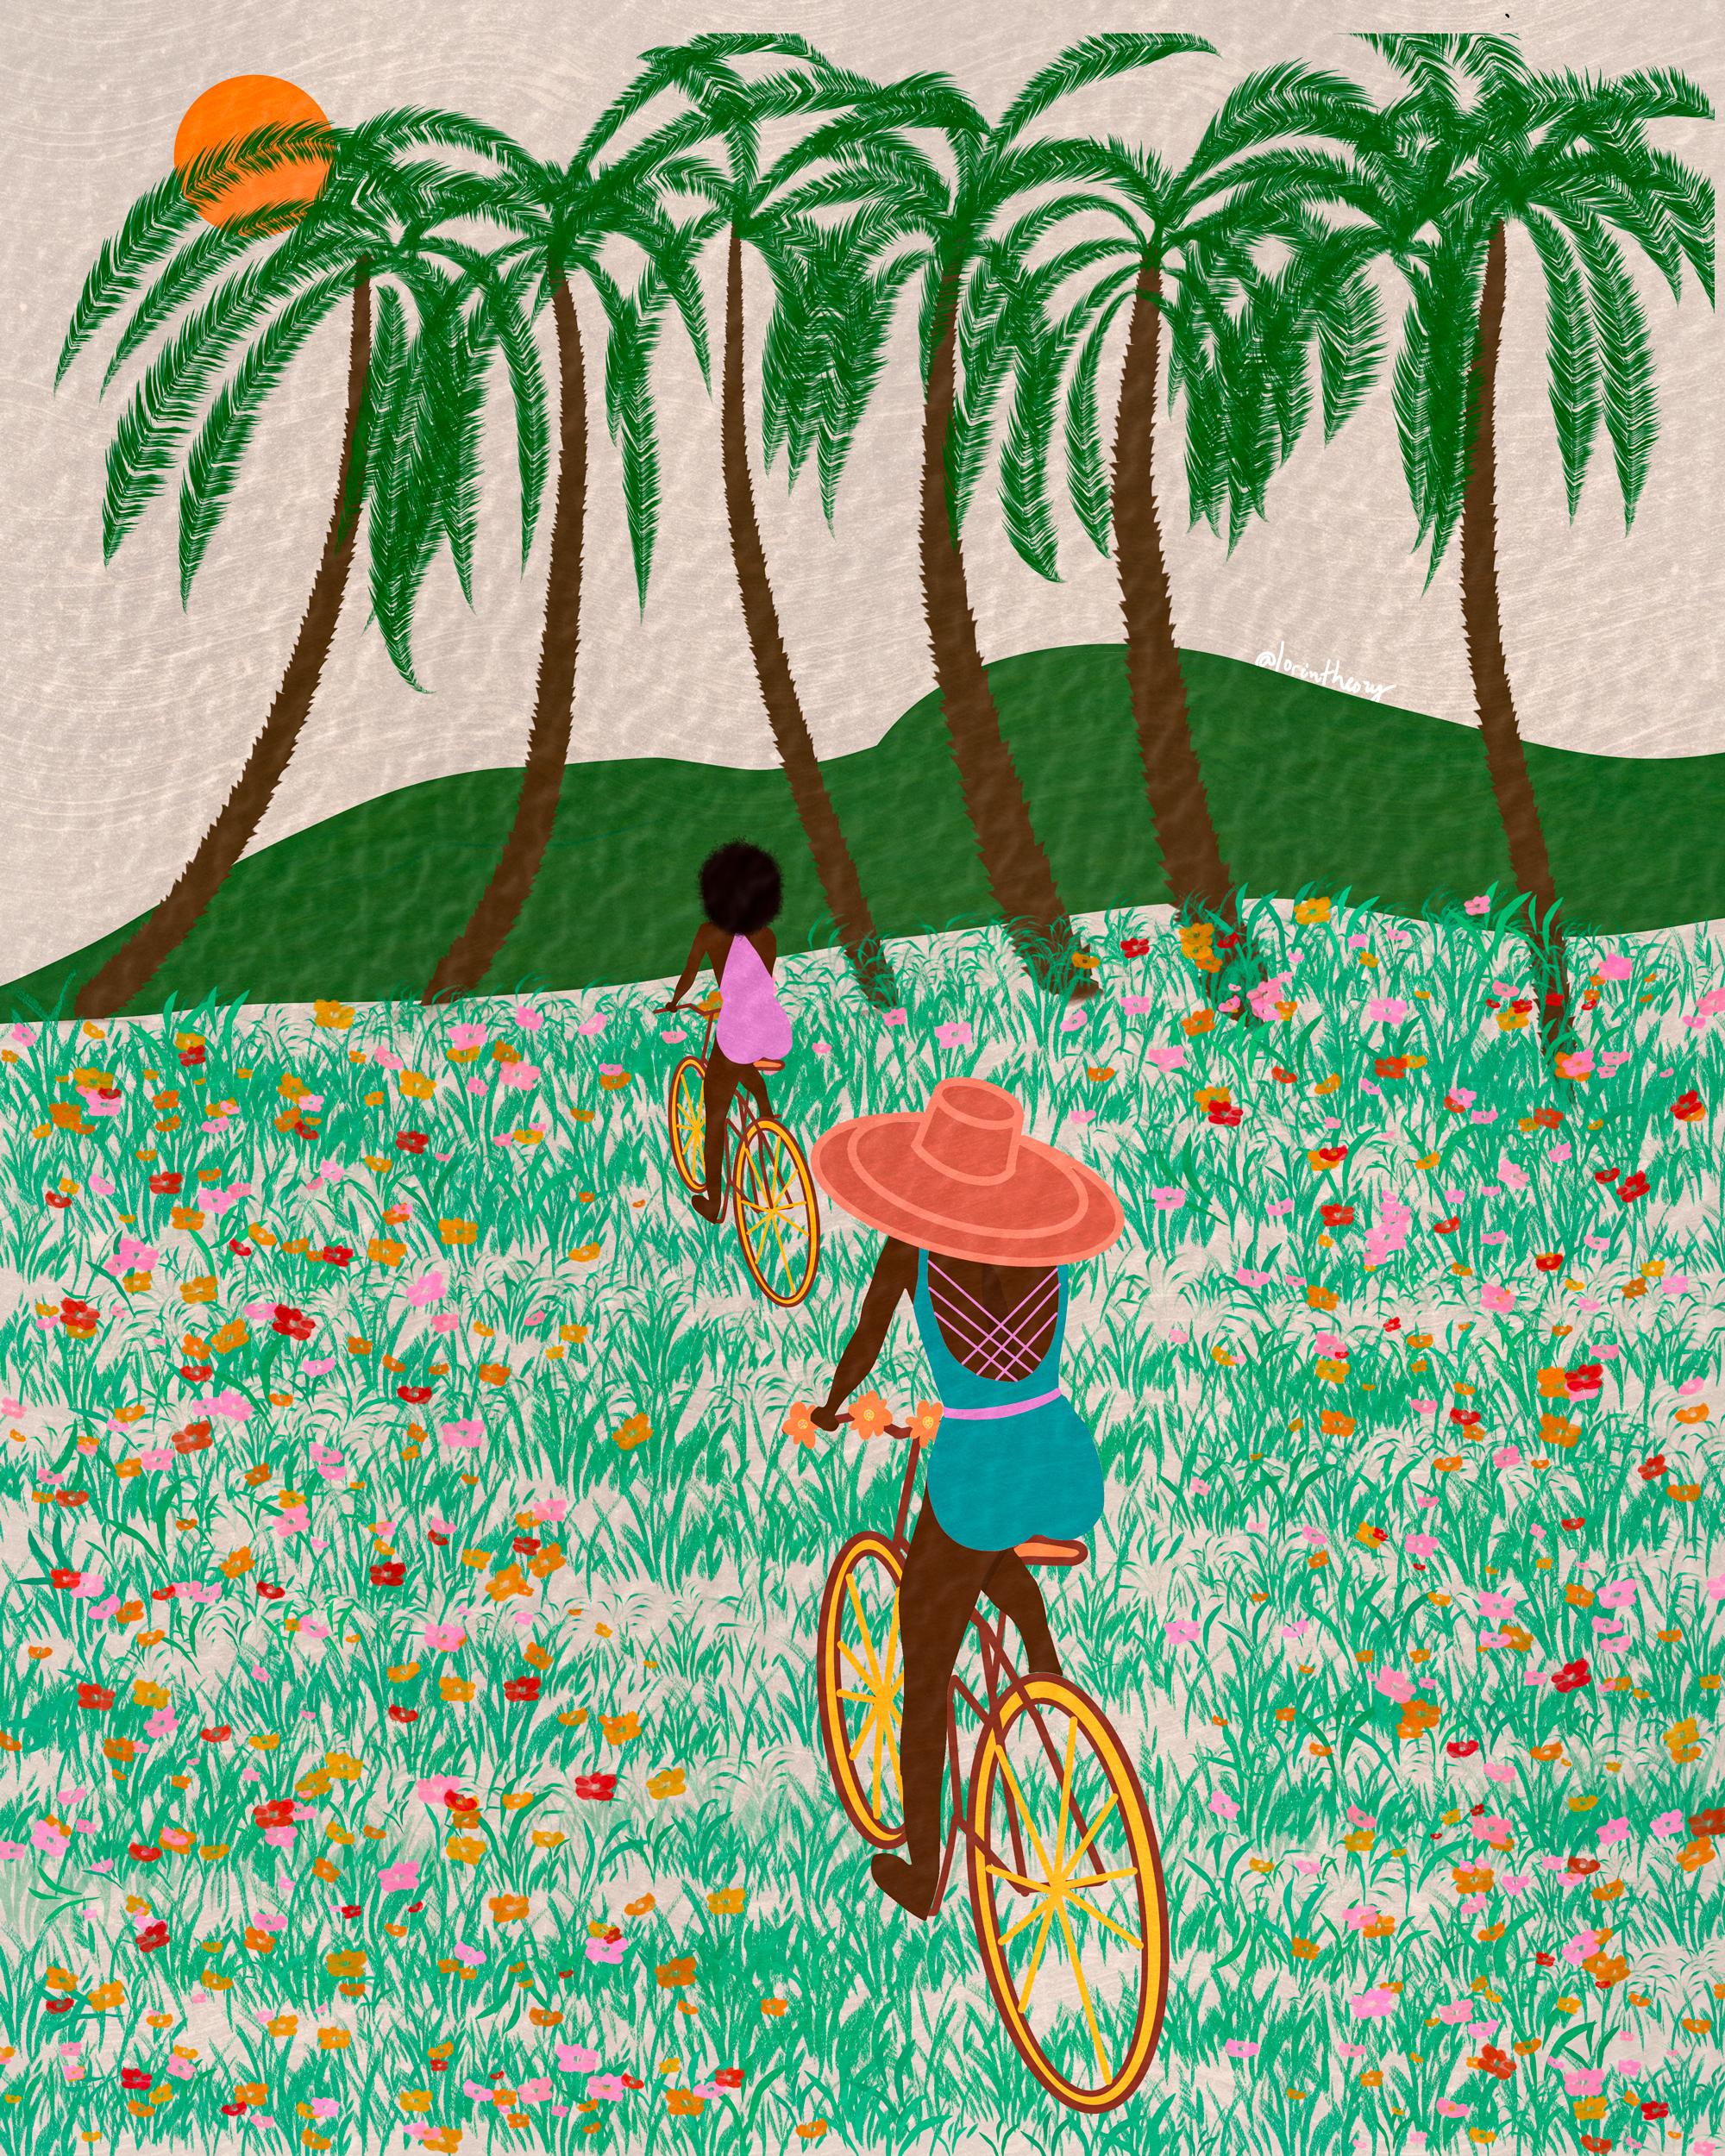 Summer Time, Biking, Afro Friendship Wall Art